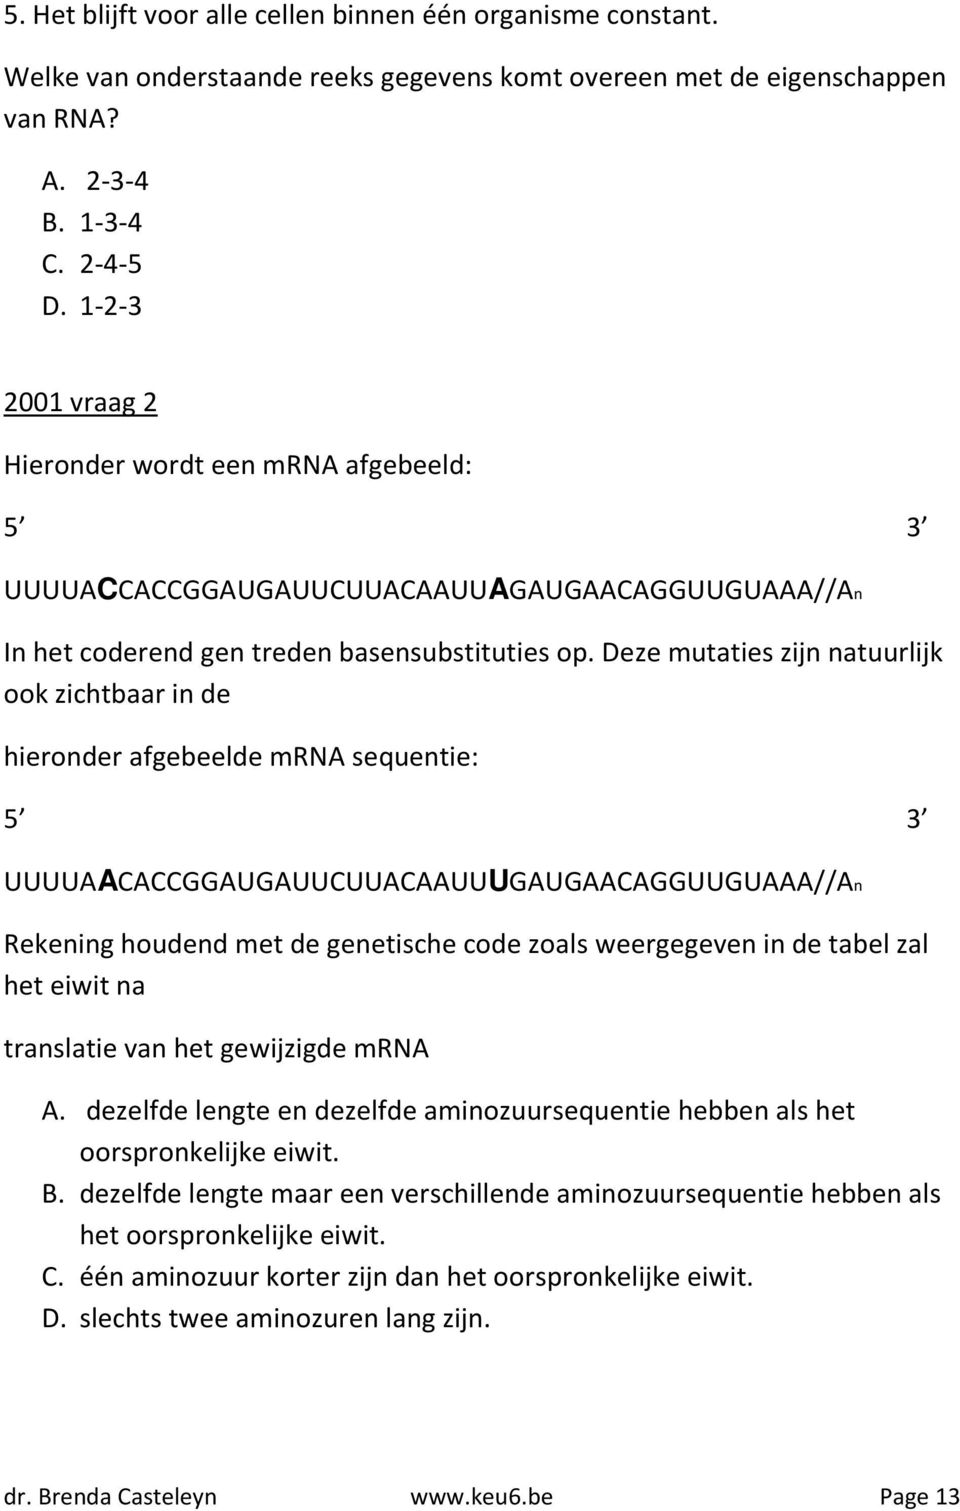 Deze mutaties zijn natuurlijk ook zichtbaar in de hieronder afgebeelde mrna sequentie: 5 3 UUUUAACACCGGAUGAUUCUUACAAUUUGAUGAACAGGUUGUAAA//An Rekening houdend met de genetische code zoals weergegeven